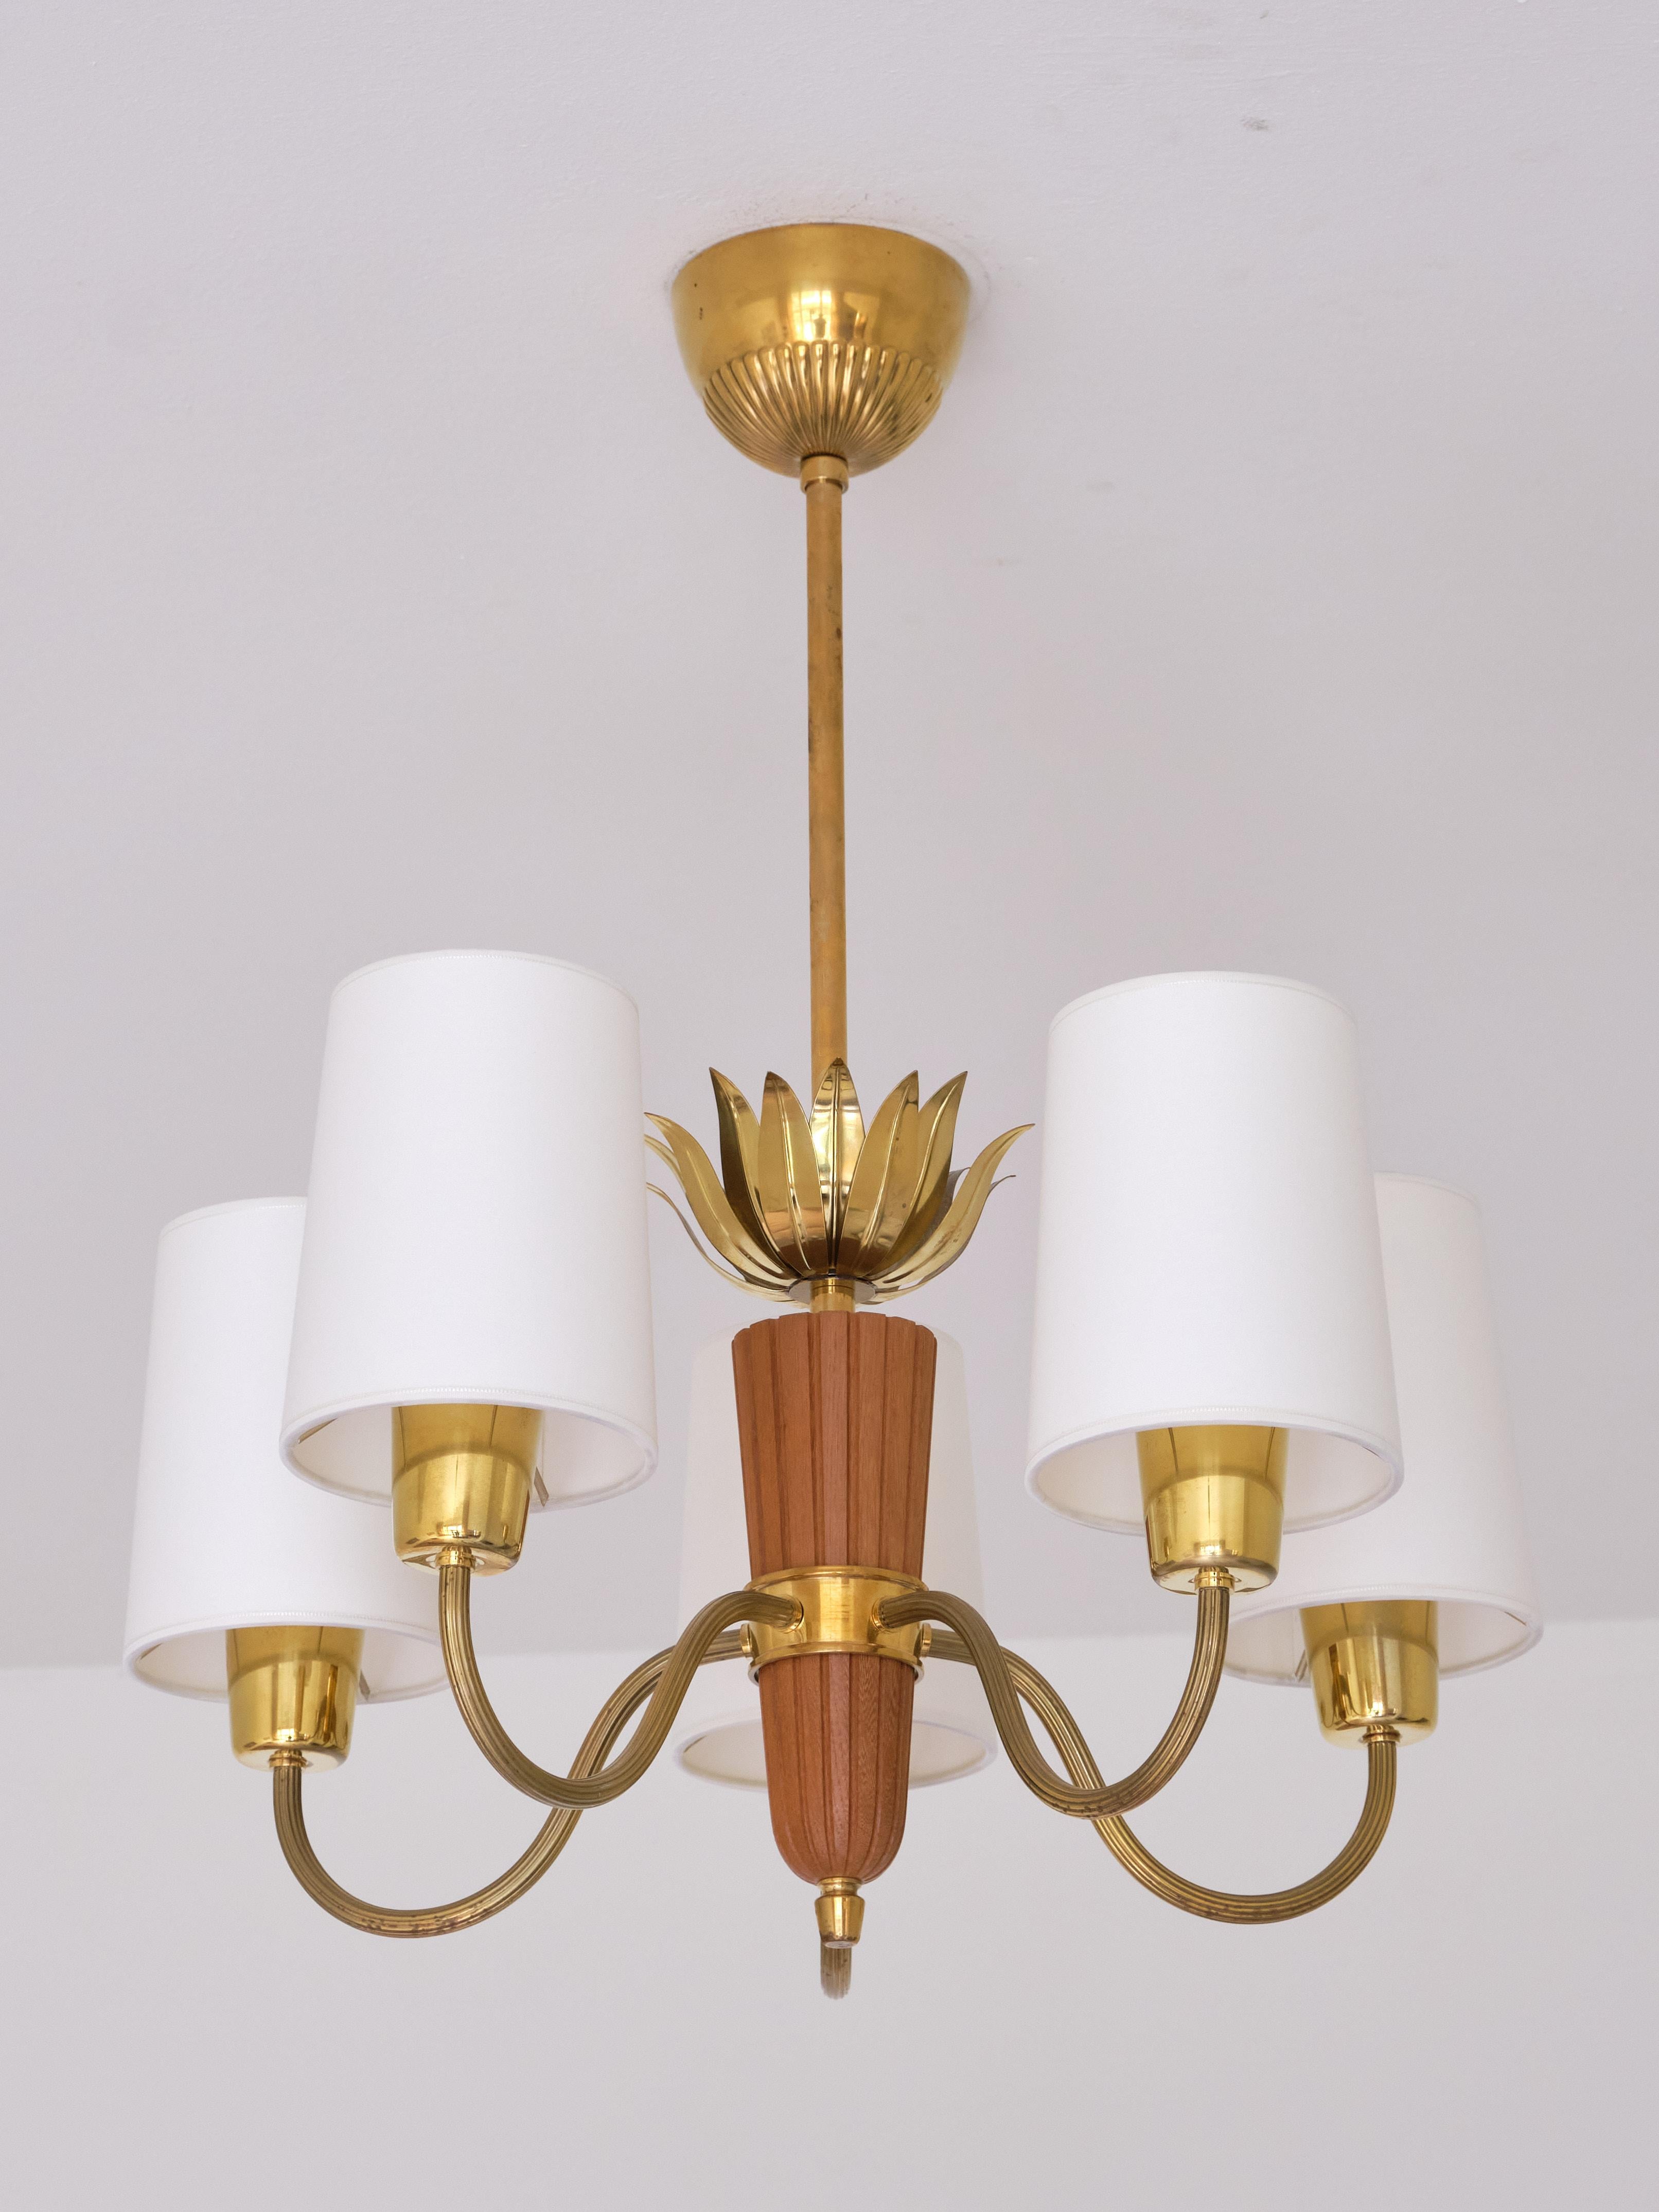 Esta elegante lámpara de araña de cinco brazos fue fabricada por ASEA en Suecia en la década de 1950. La lámpara consta de un vástago de latón, una pieza central de roble tallado a la que se sujetan los cinco brazos. Las hojas decorativas de latón